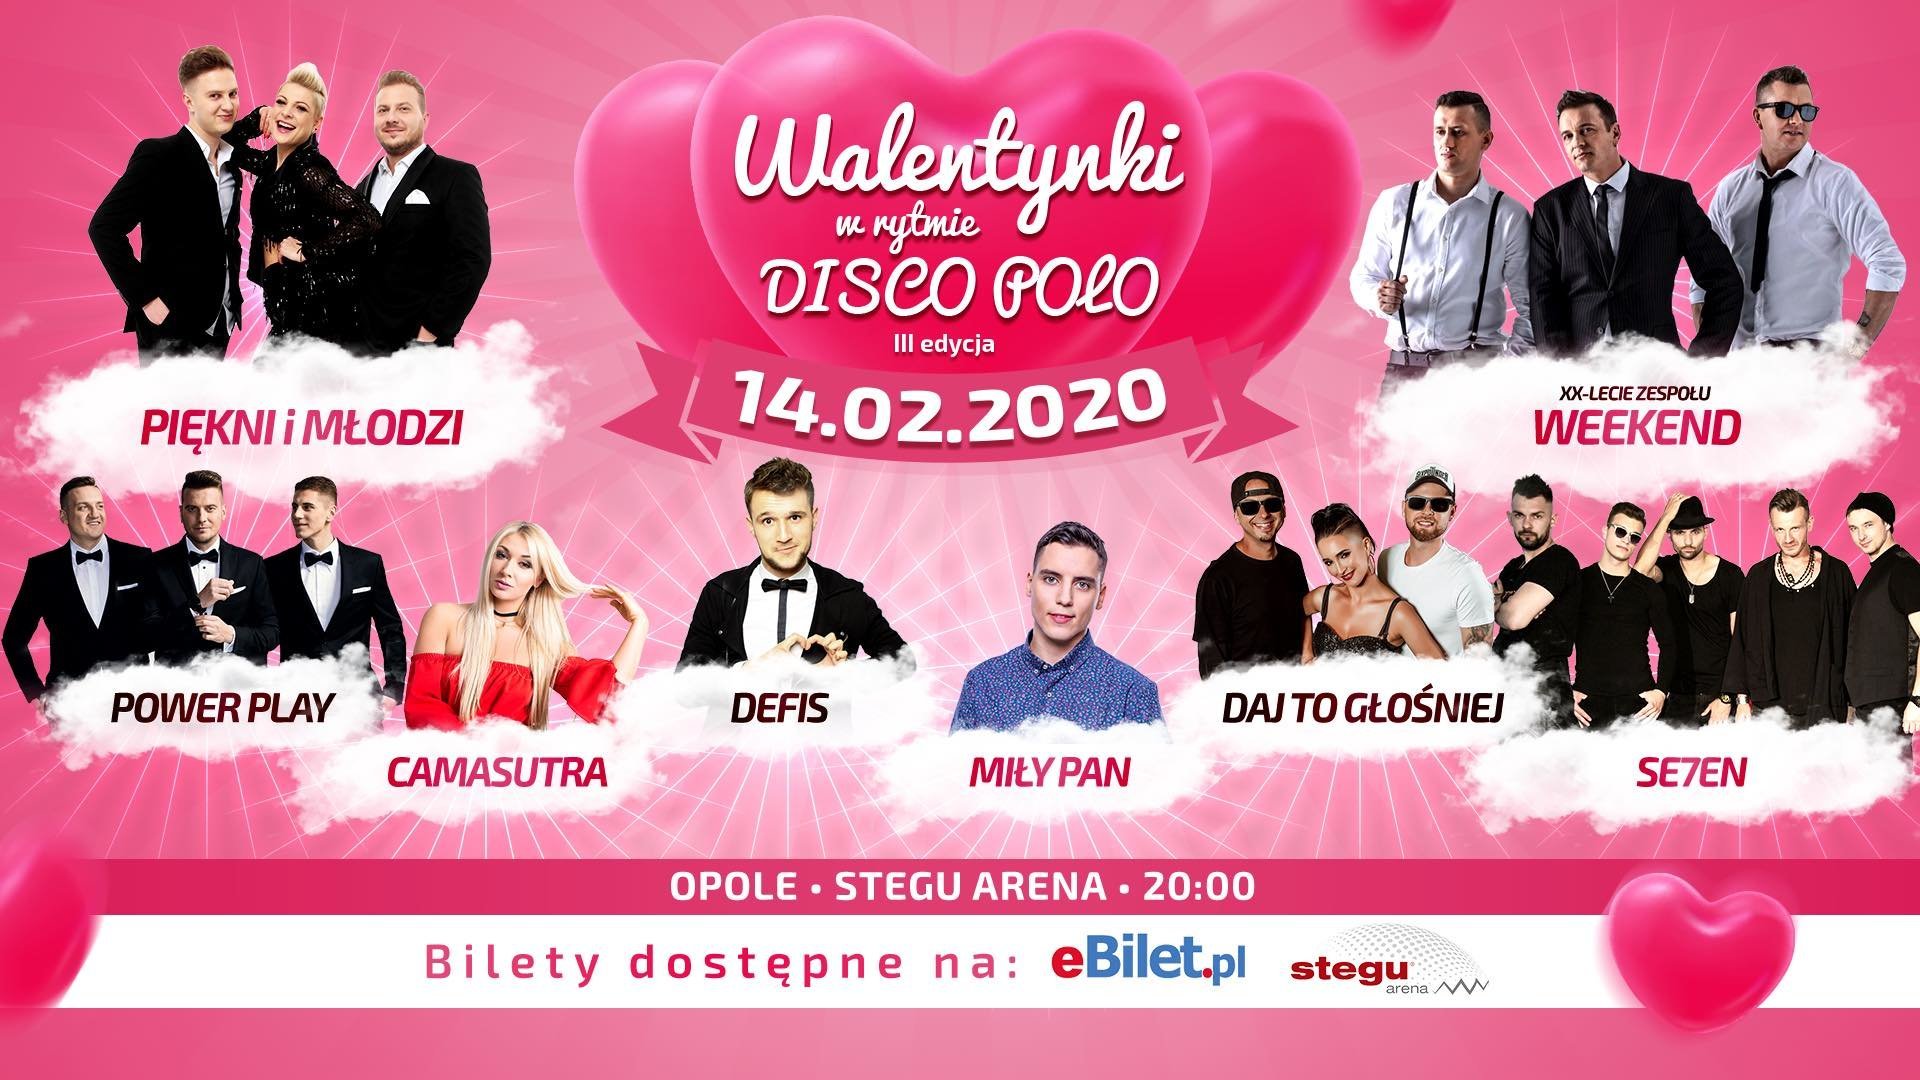 Spędź walentynki z największymi gwiazdami disco polo! Opole stolicą muzyki tanecznej! 